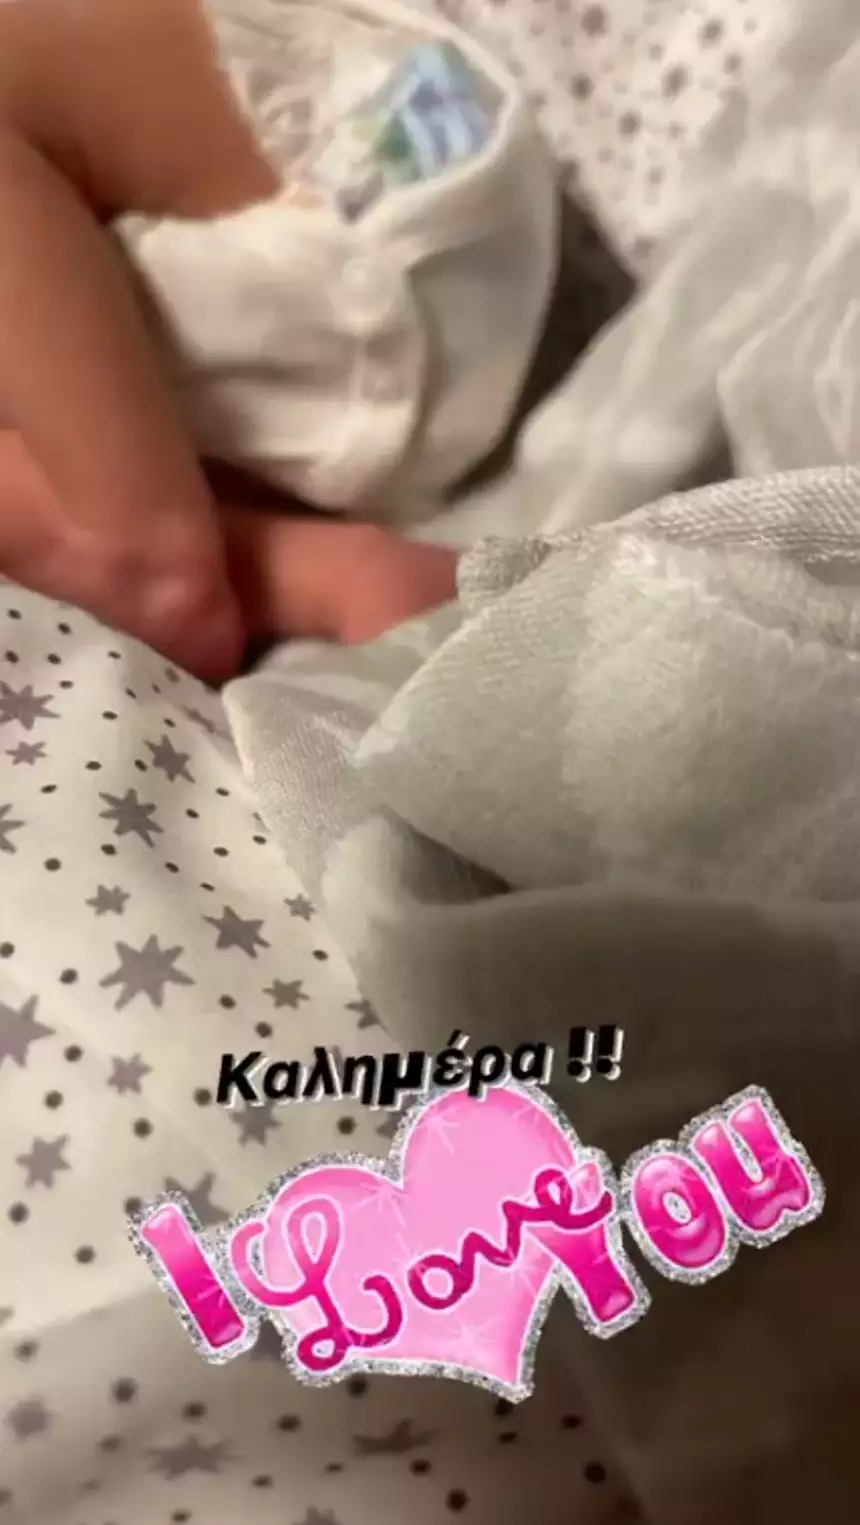 Η Χριστίνα Παππά δημοσίευσε την πρώτη φωτογραφία της εγγονής της! «Καλημέρα, σε αγαπώ!» (εικόνα)